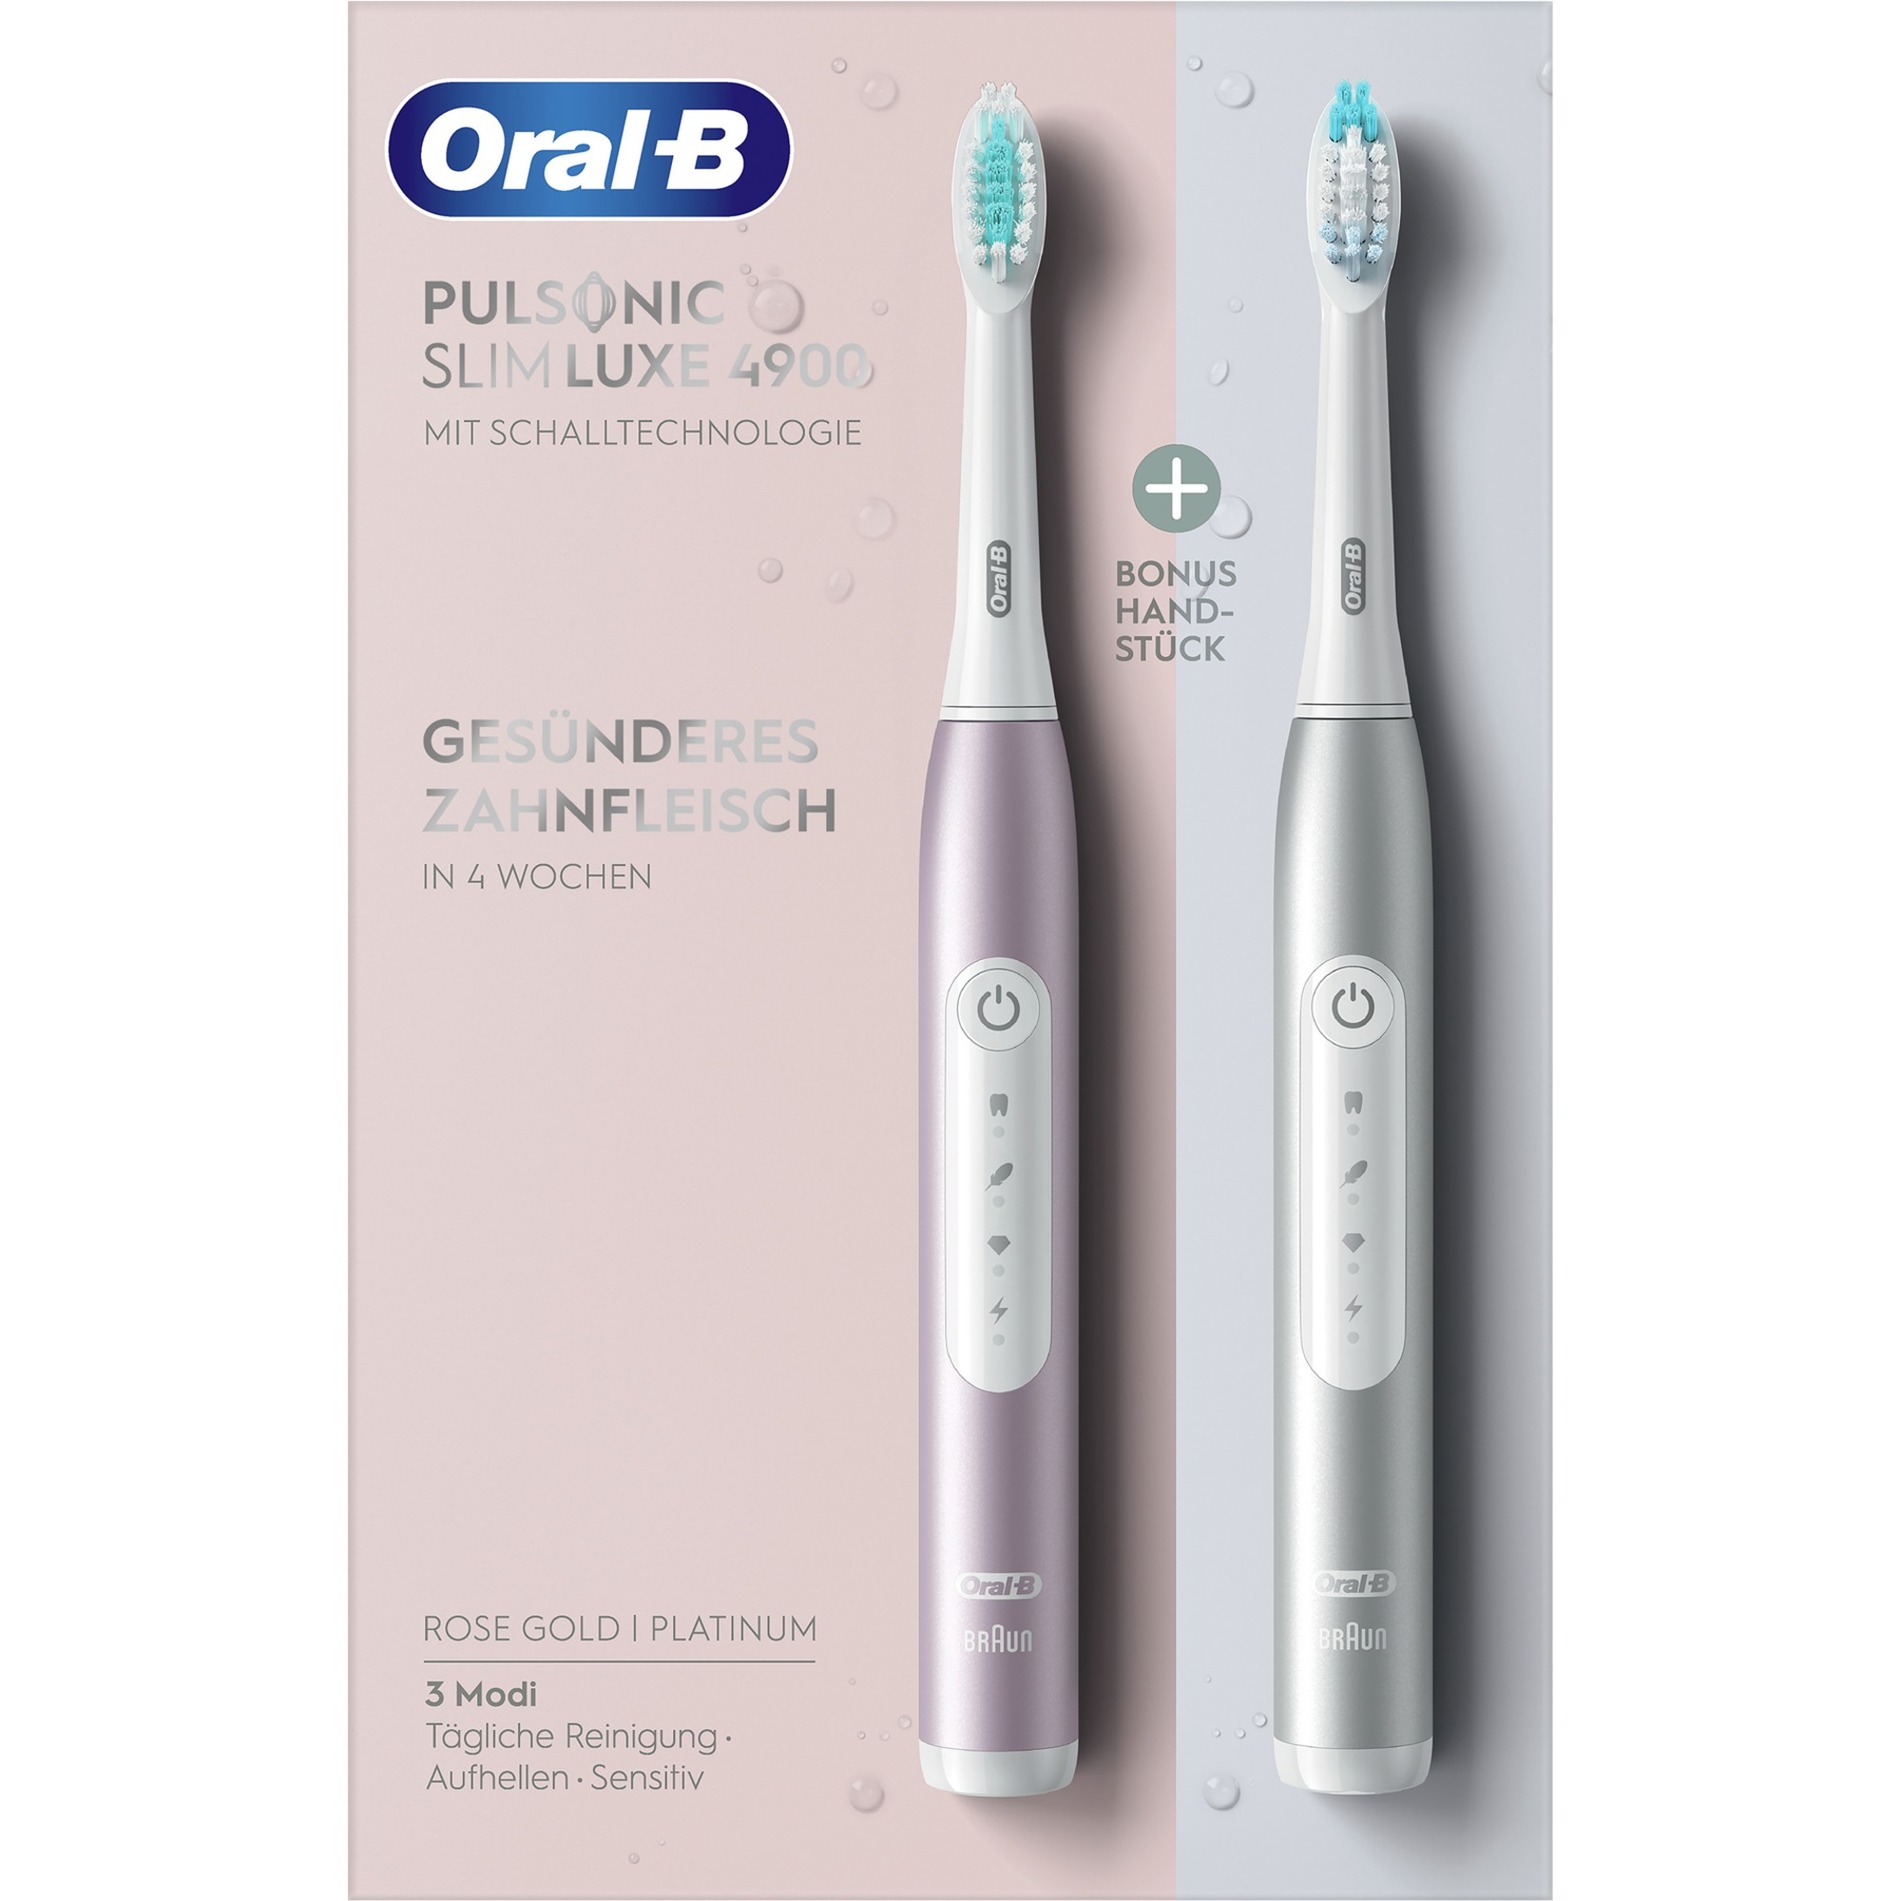 Image of Alternate - Oral-B Pulsonic Slim Luxe 4900, Elektrische Zahnbürste online einkaufen bei Alternate